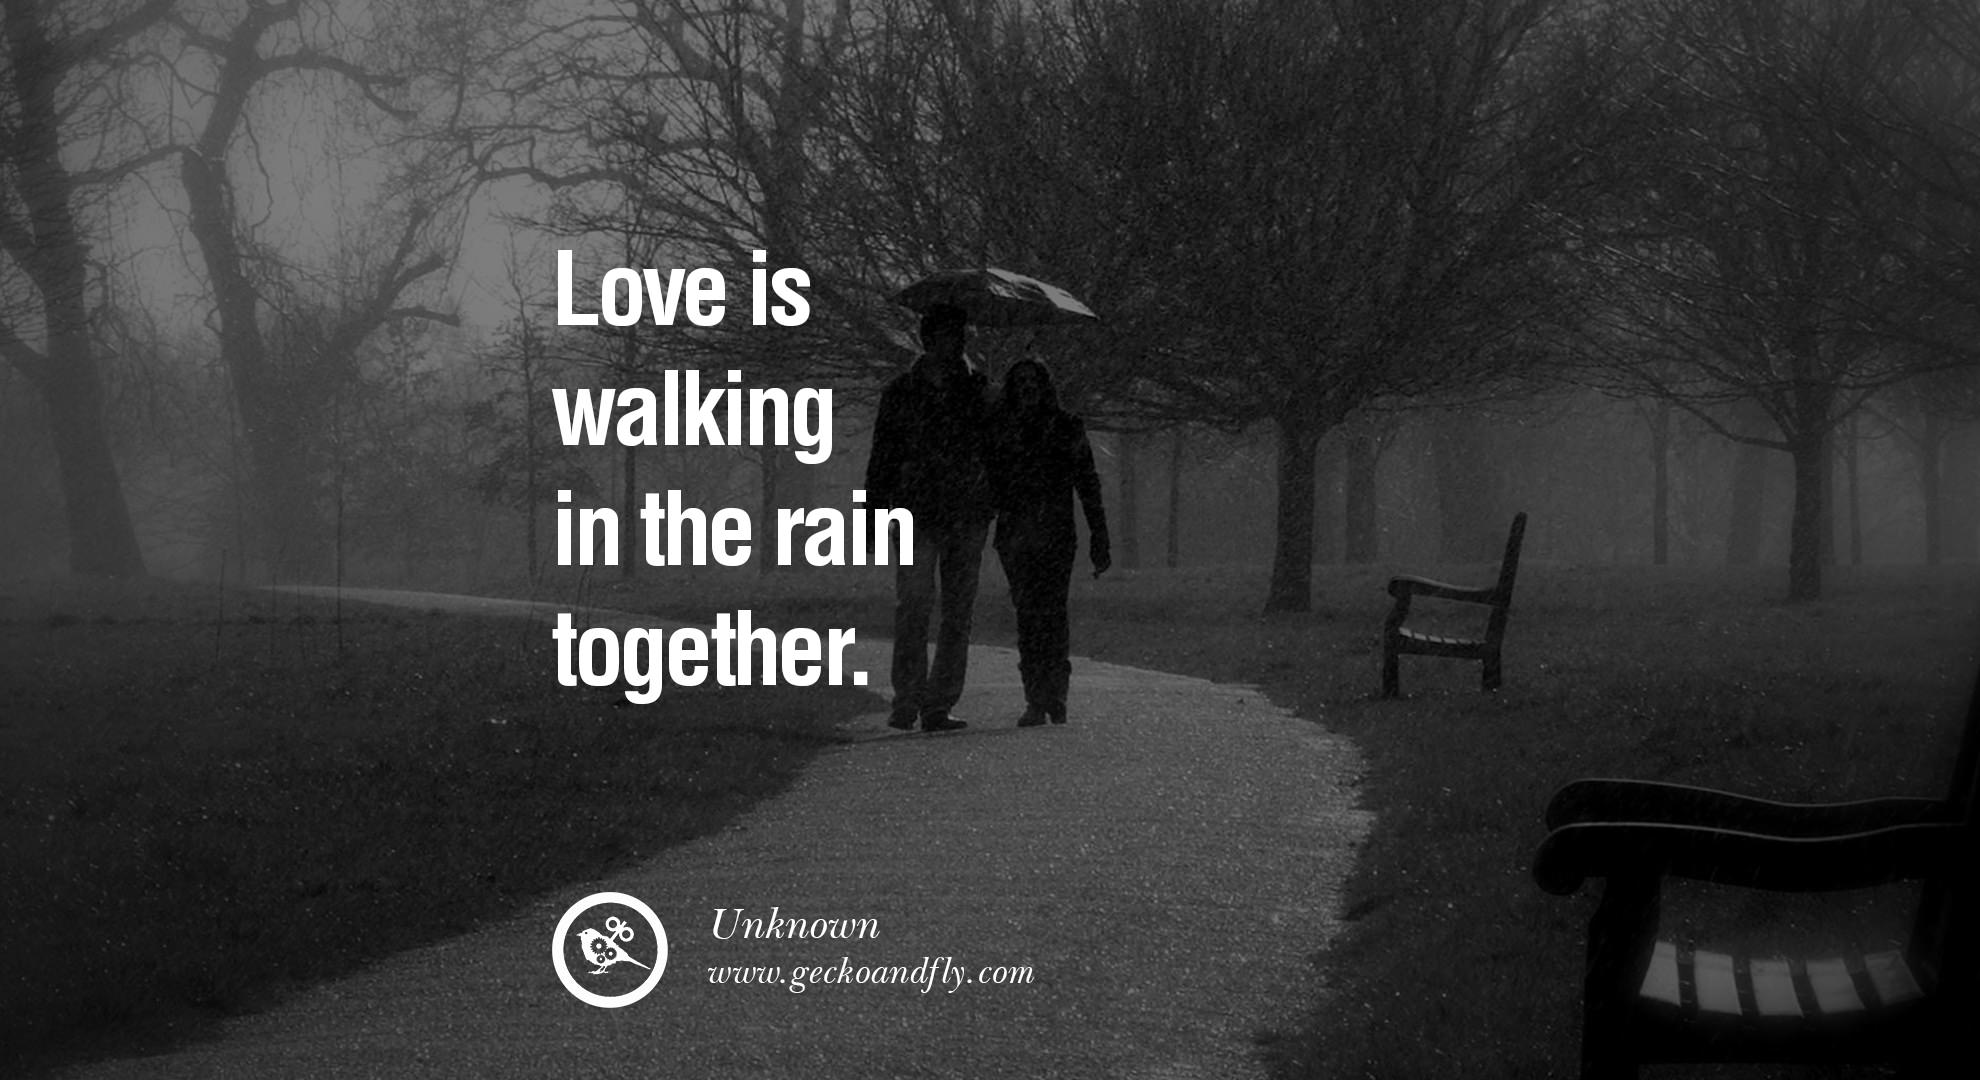 Am walking in the rain